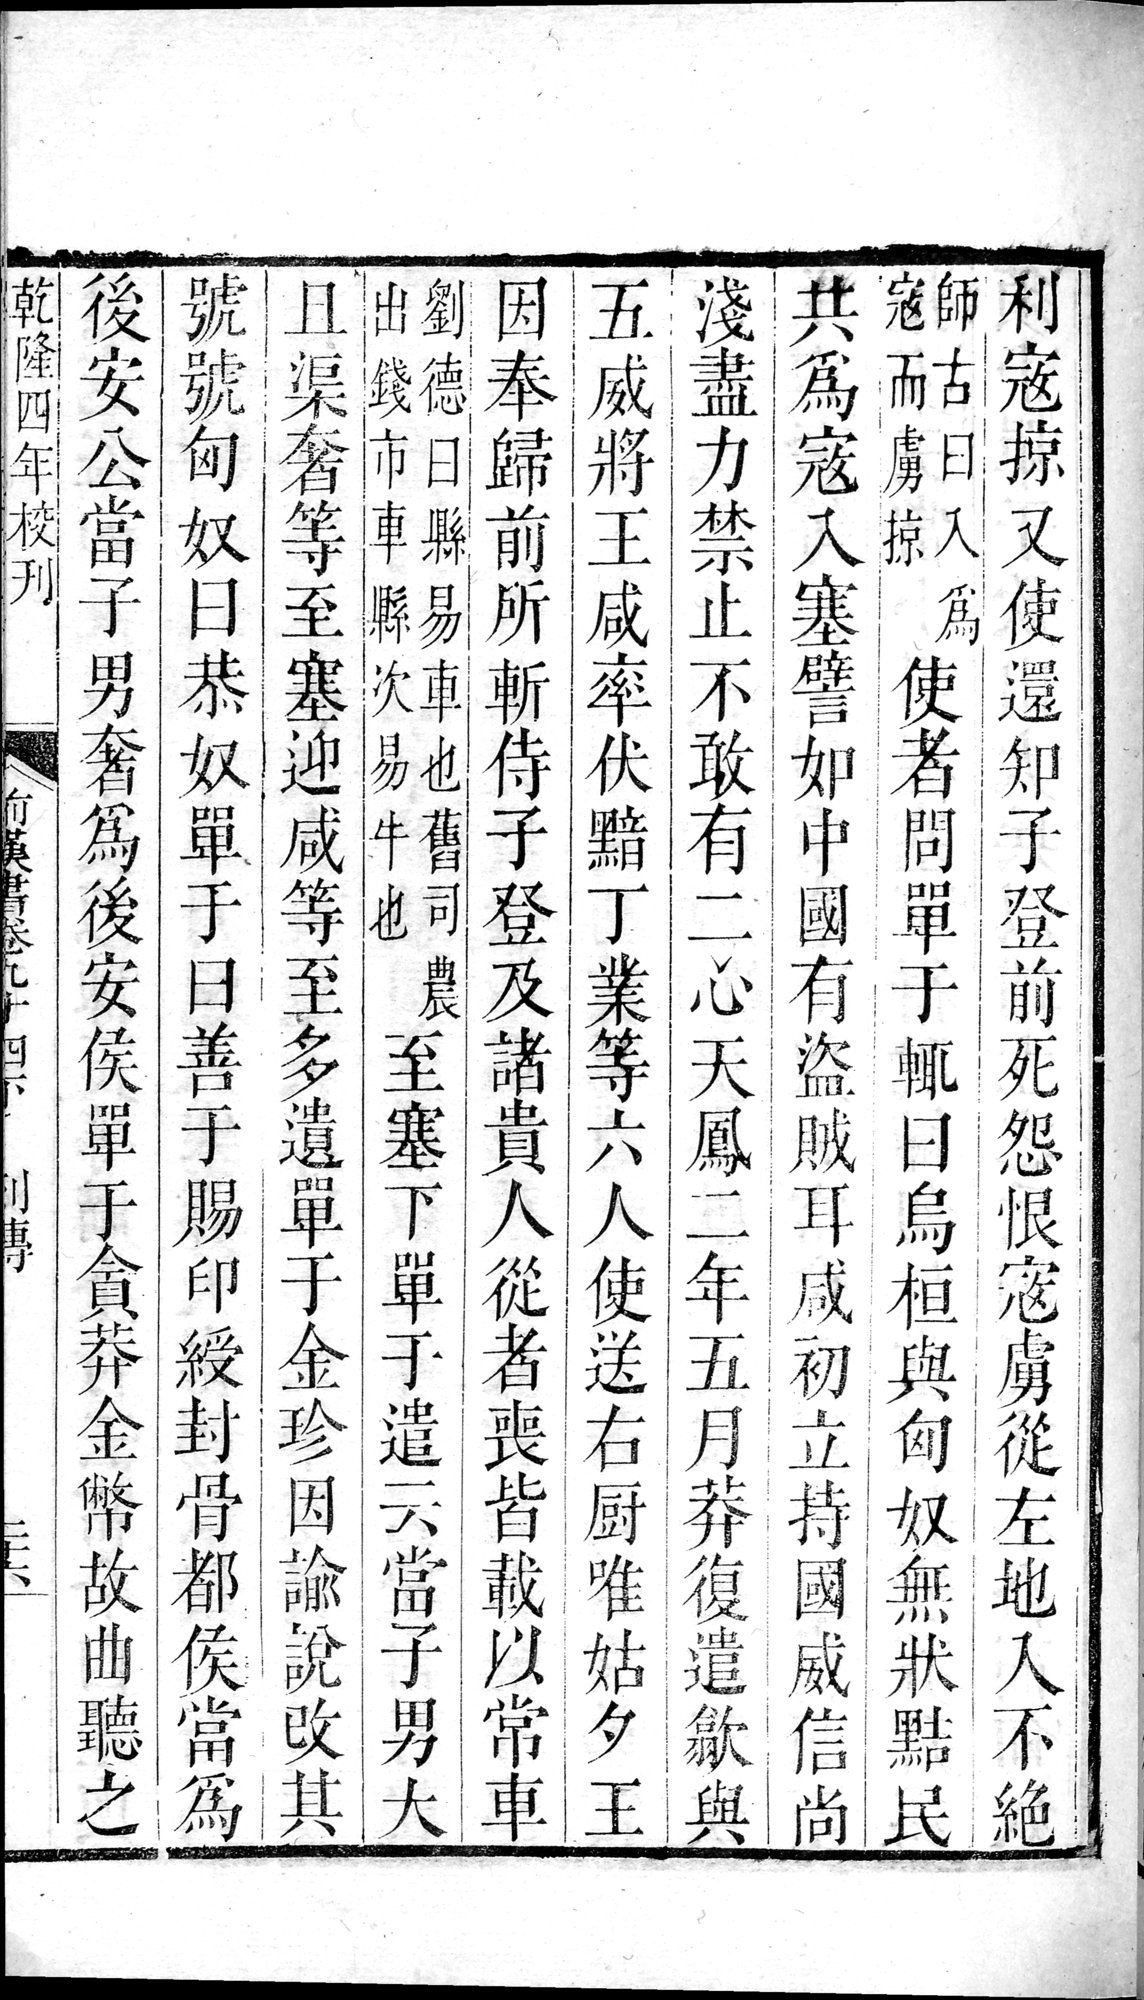 前漢書 : vol.94 bottom / Page 51 (Grayscale High Resolution Image)